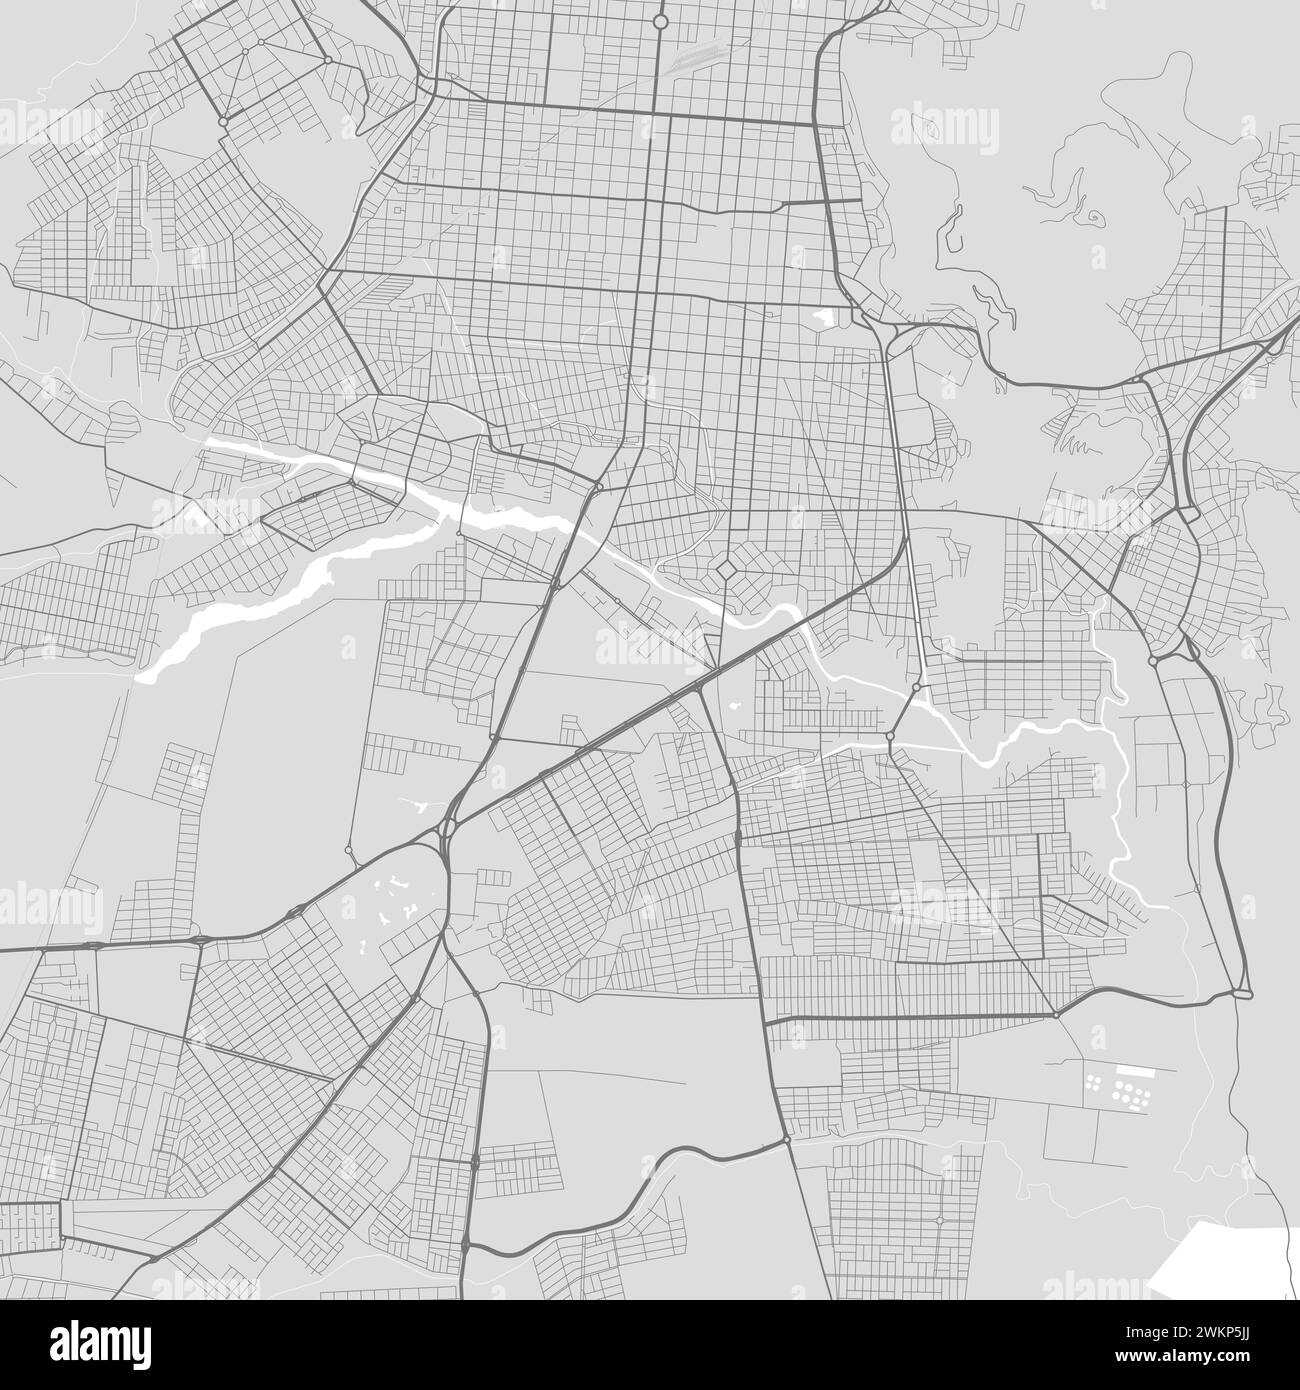 Carte de la ville de Salta, Argentine. Affiche urbaine noir et blanc. Image de carte routière avec vue de la zone urbaine. Illustration de Vecteur